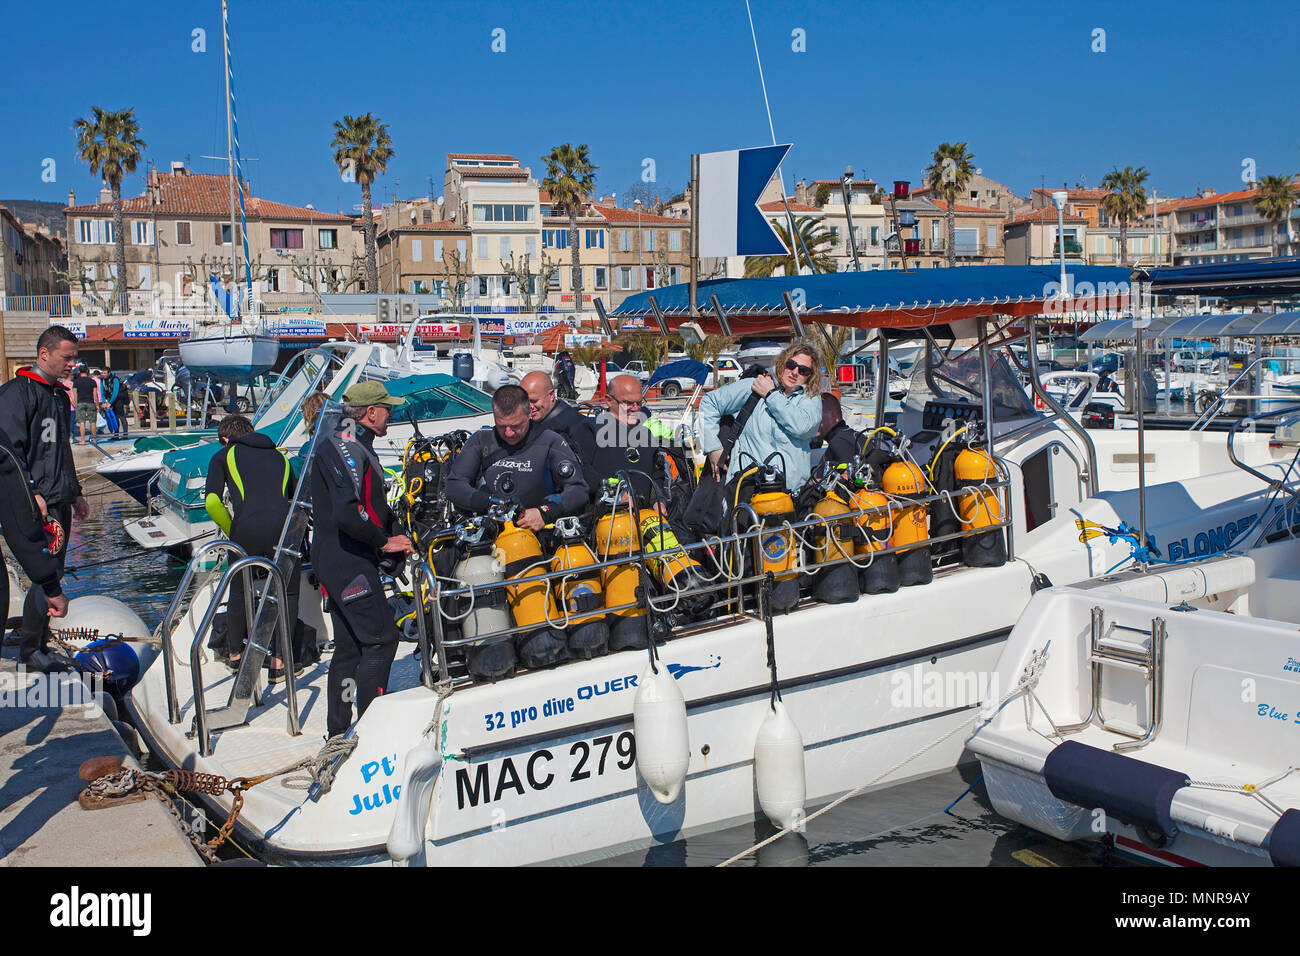 Scuba Diver tauchen Boot im Hafen von La Ciotat, Bouches-du-Rhône der Region Provence-Alpes-Côte d'Azur, Südfrankreich, Frankreich, Europa Stockfoto